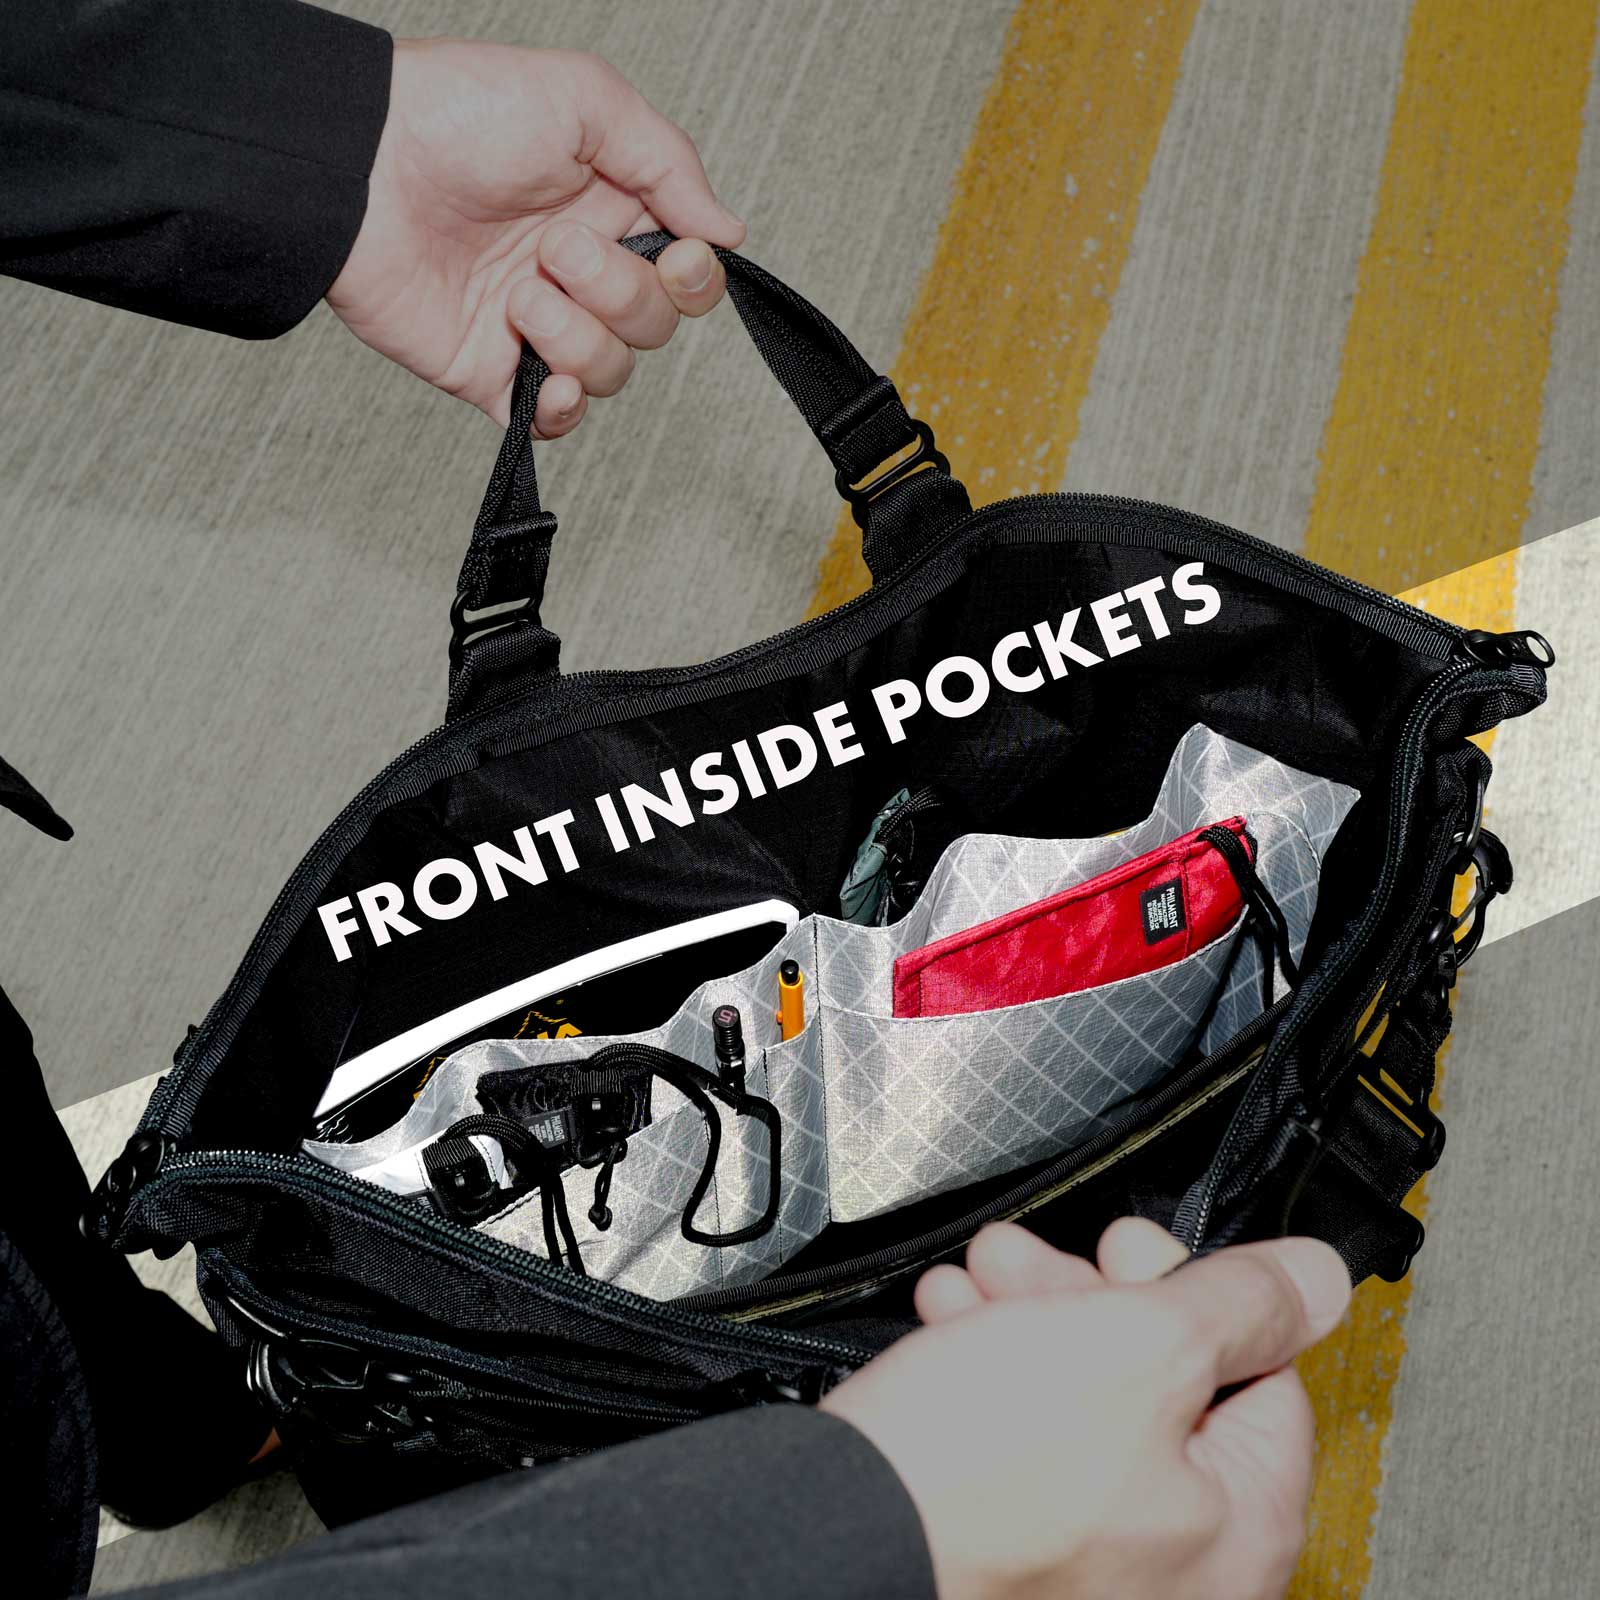 ペン差し用のインナーポケットを装備したビジネスバッグ